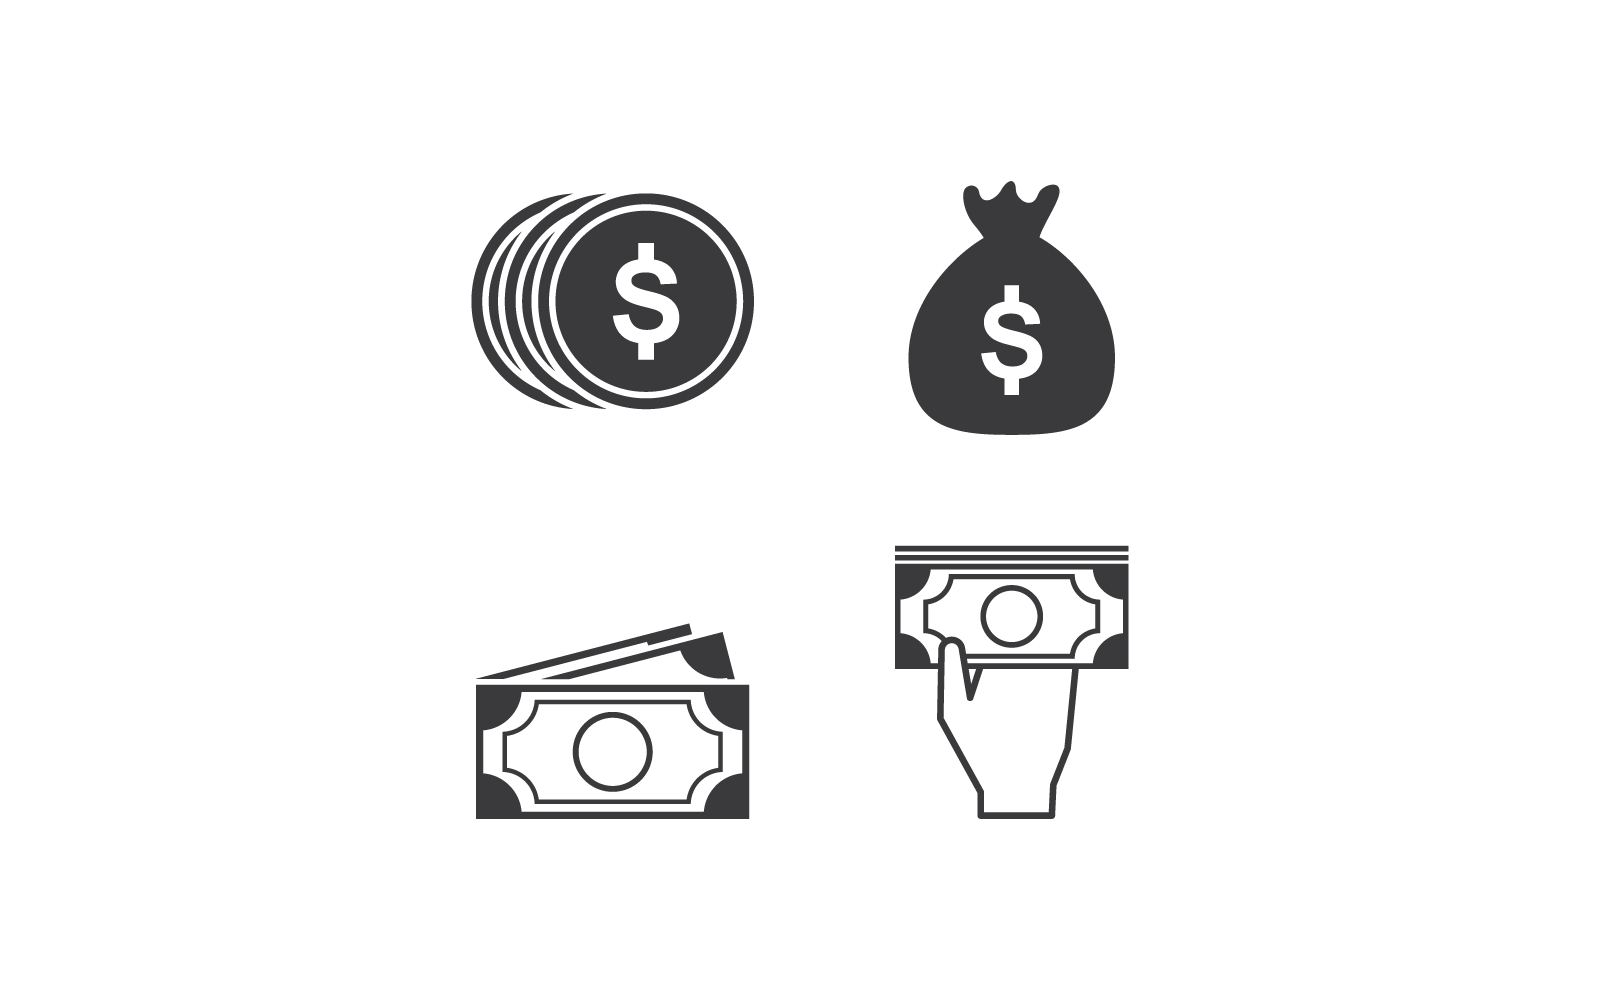 Diseño plano del icono de mano y dinero de moneda